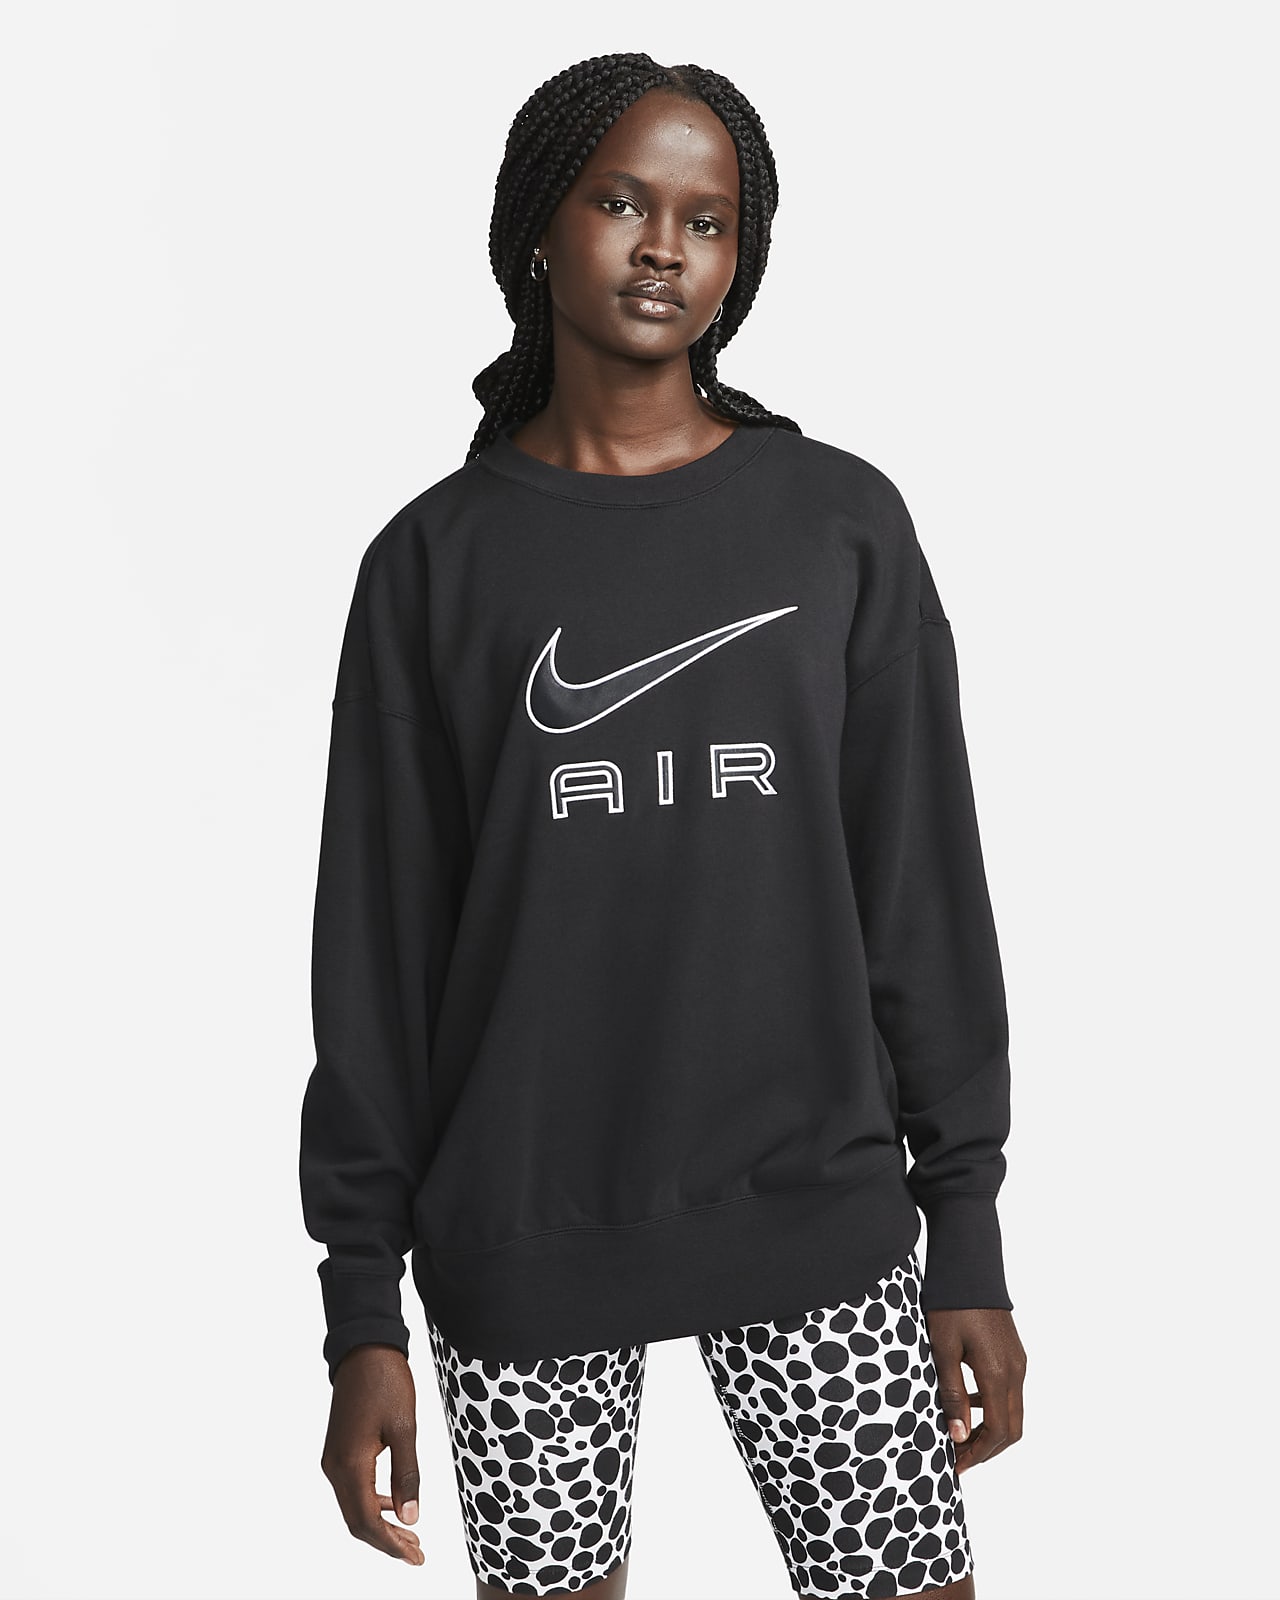 reparatøren reservation forsikring Nike Air-crew-sweatshirt i fleece til kvinder. Nike DK